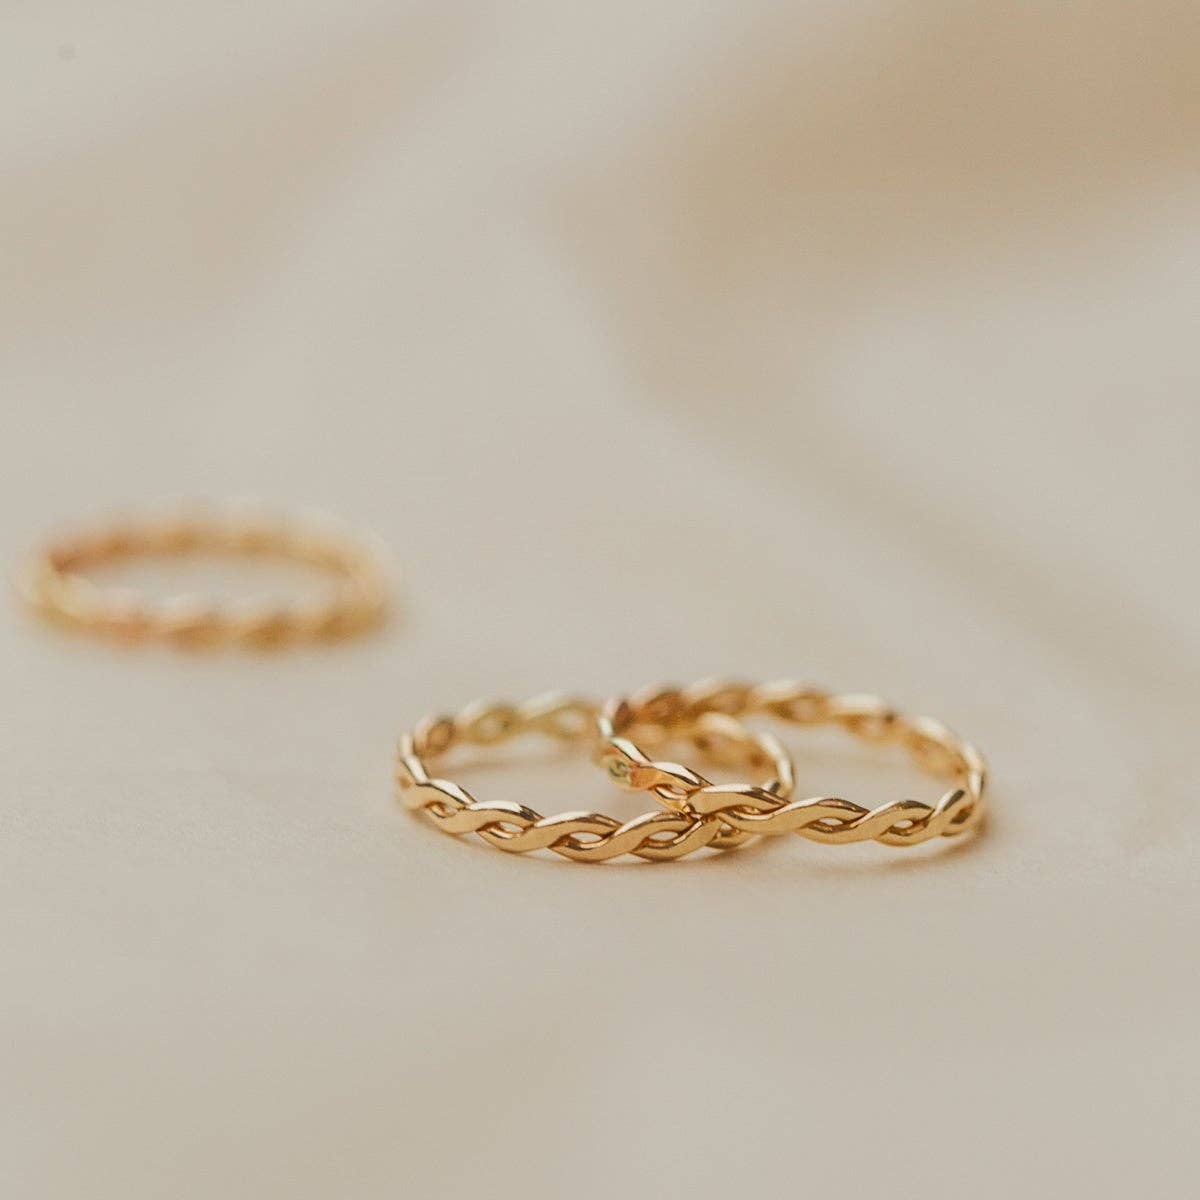 Laurel Ring - Gold Filled / 9